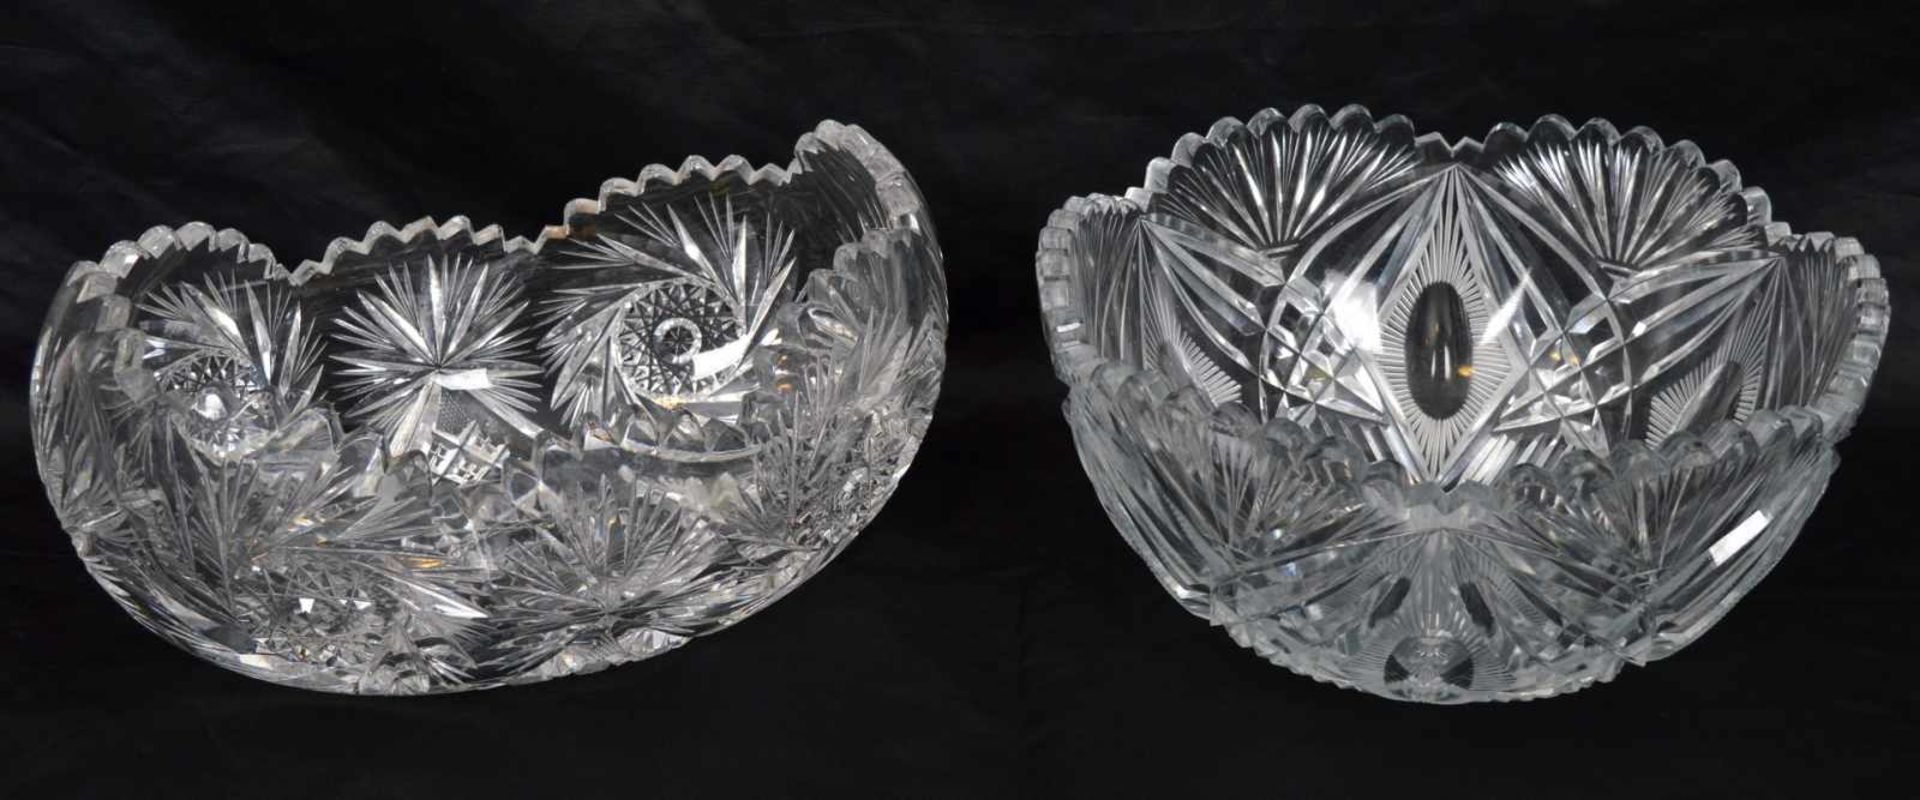 Zwei Aufsatzschalenfarbl. Kristallglas, geschliffen verziert, gezackter Rand, rund bzw. oval, H 12